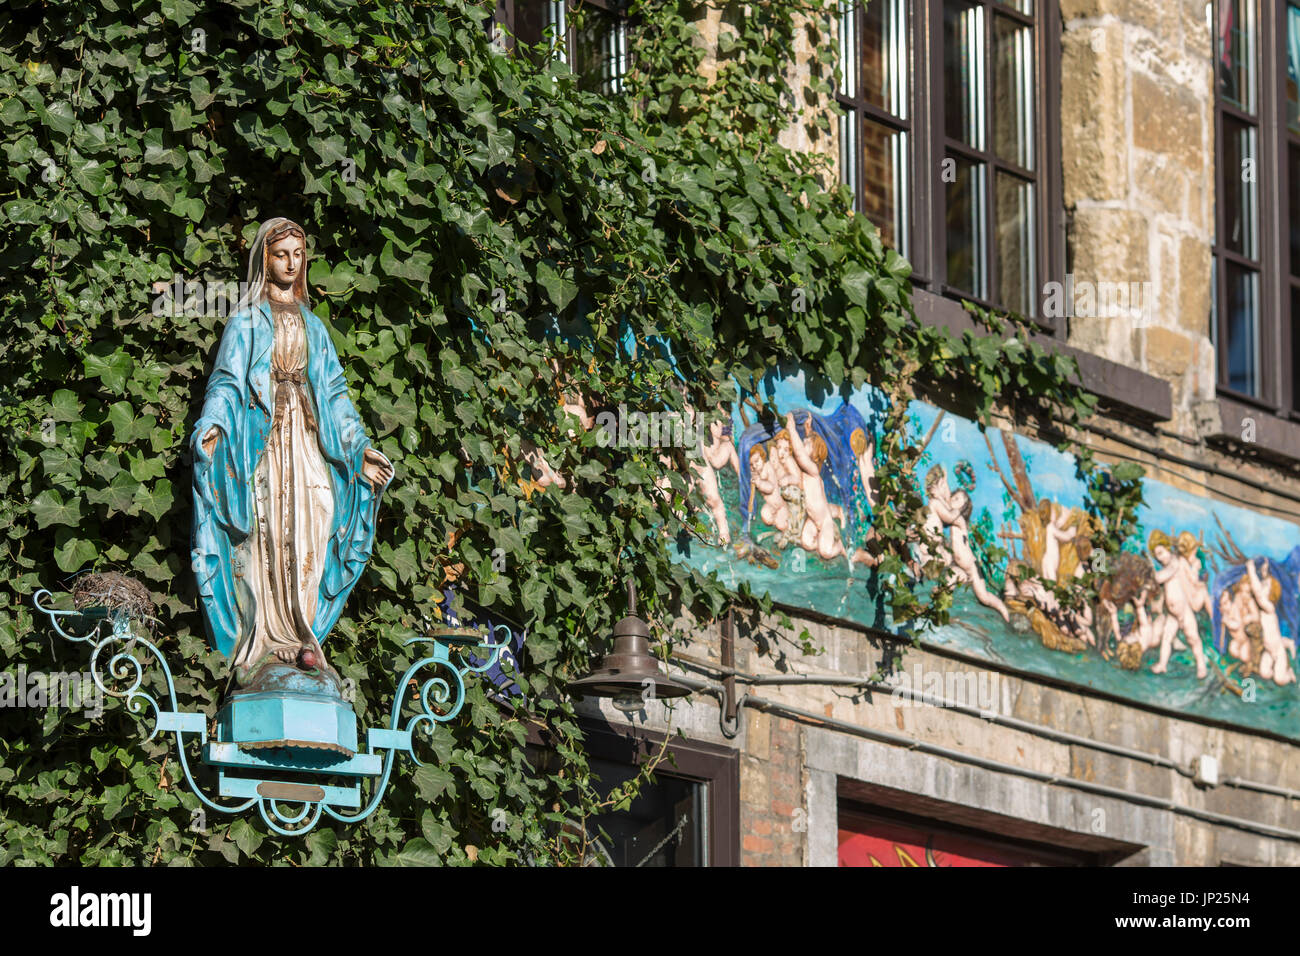 Amberes, Bélgica - 9 de marzo de 2014: Católica efigie y bajorrelieves con decoración en edificio viejo en Amberes, Bélgica. Foto de stock